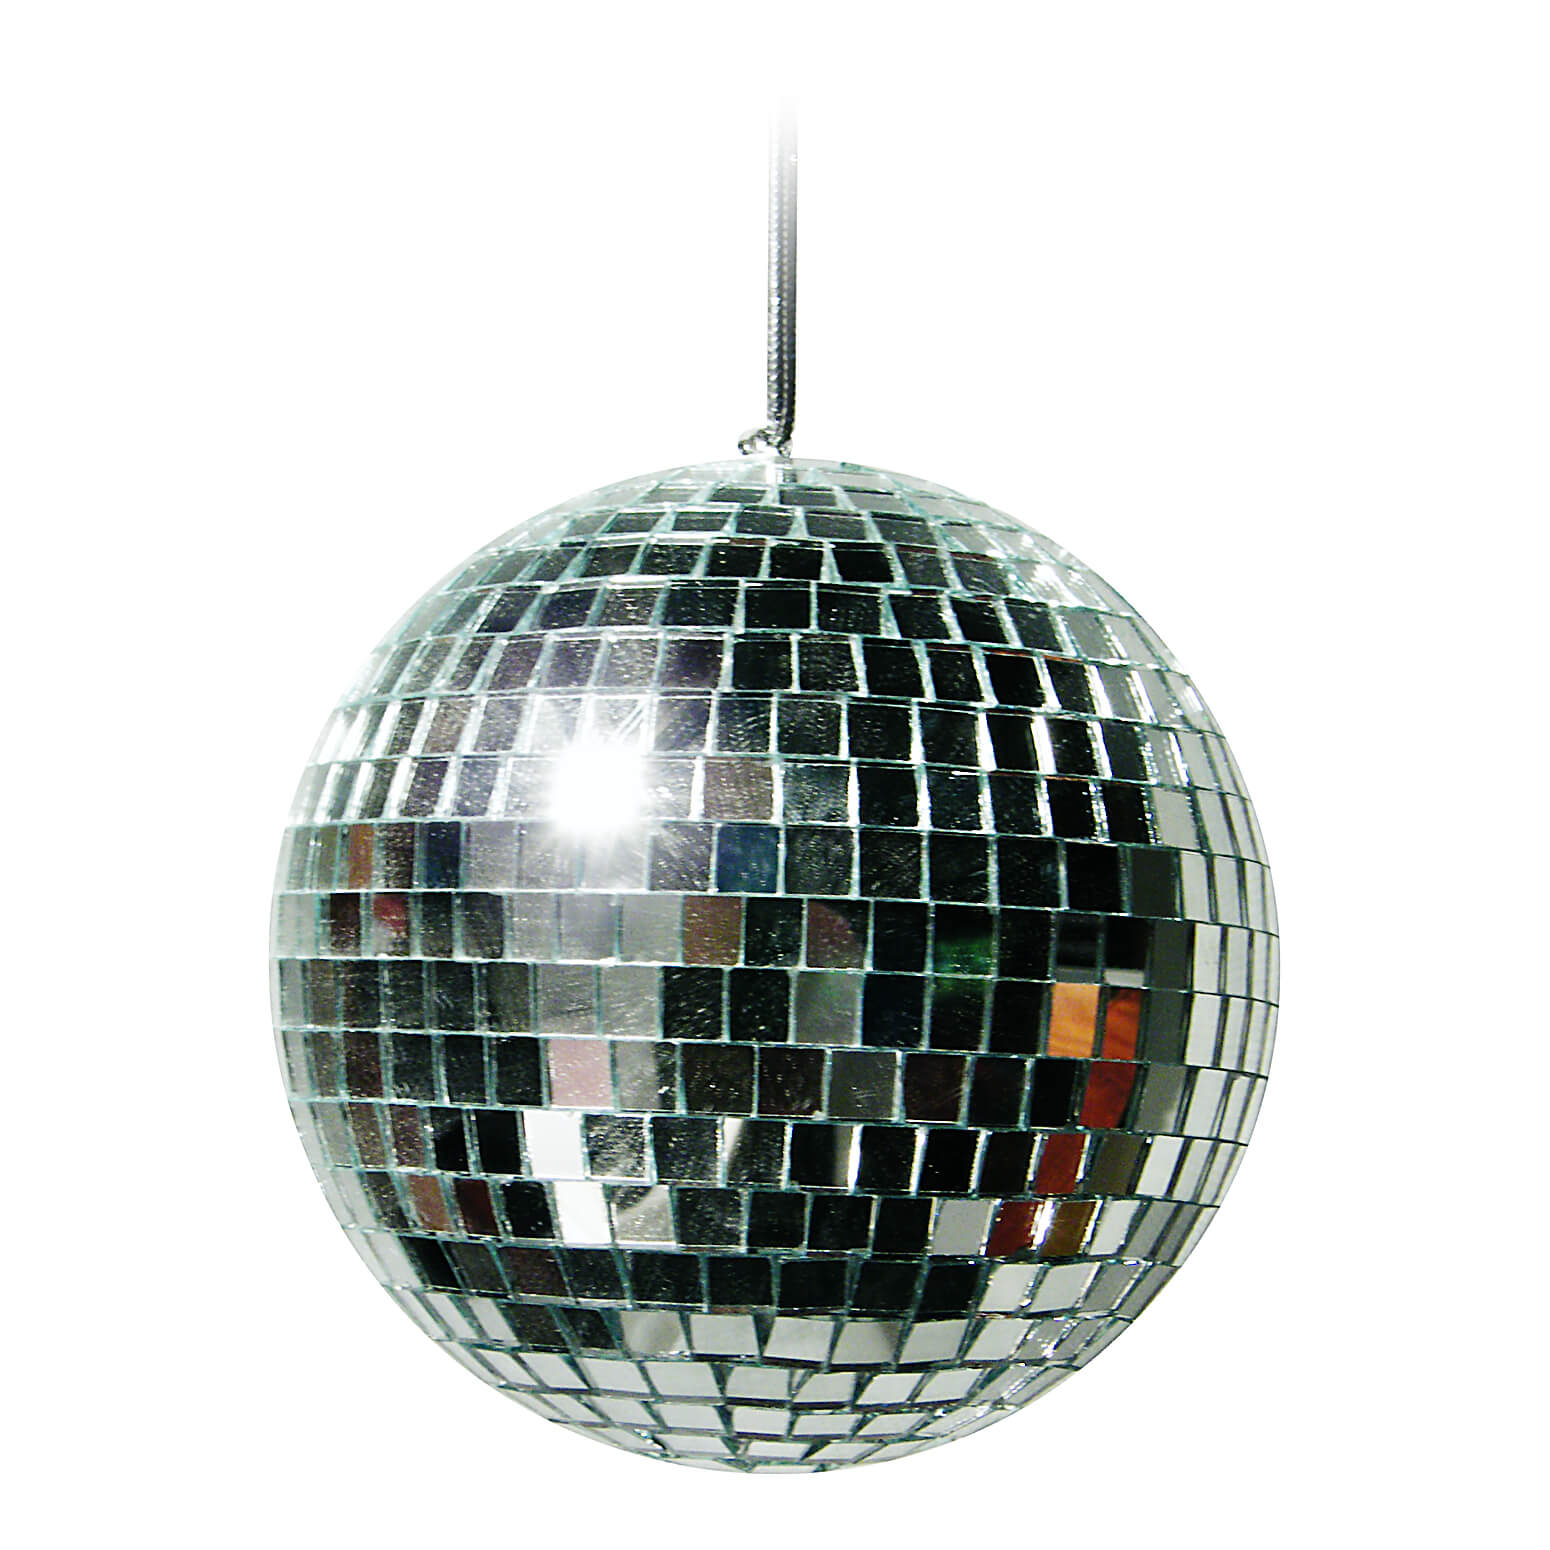 

Зеркальный диско-шар 20 см SETA Decor 9-245